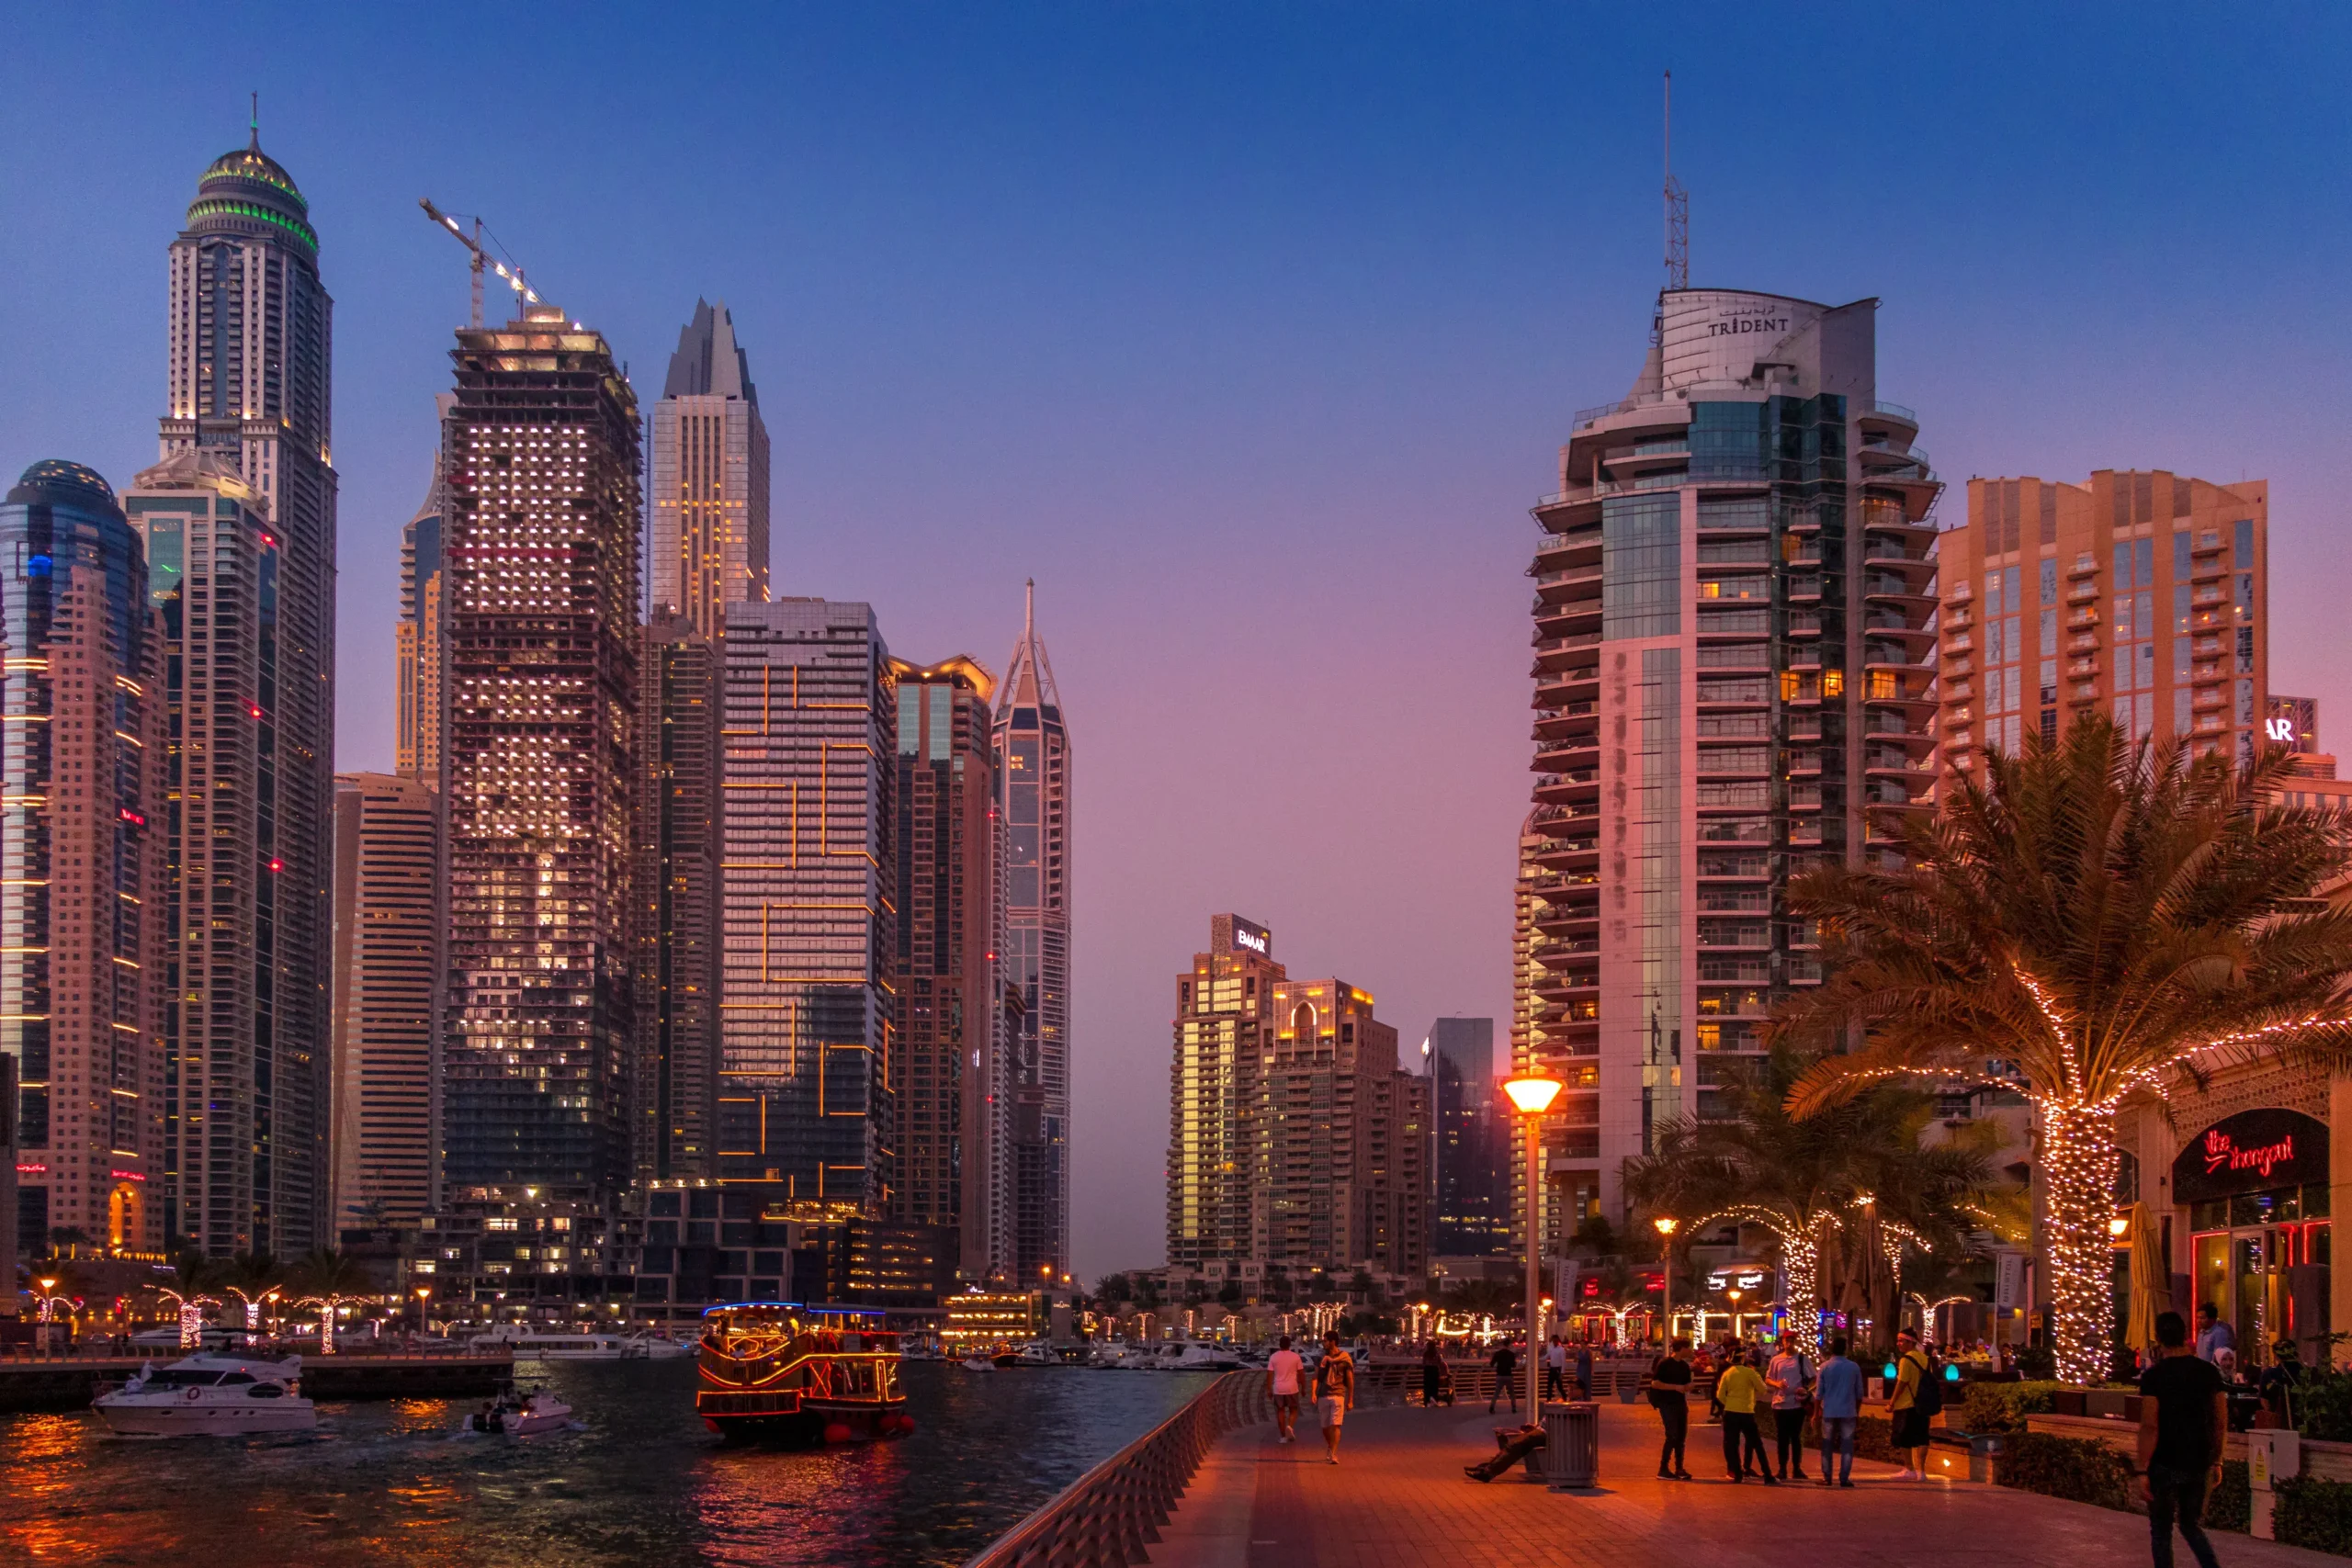 दुबई में घूमने की 10 सबसे अच्छी जगह | दुबई घूमने का खर्चा | वीज़ा की पूरी जानकारी